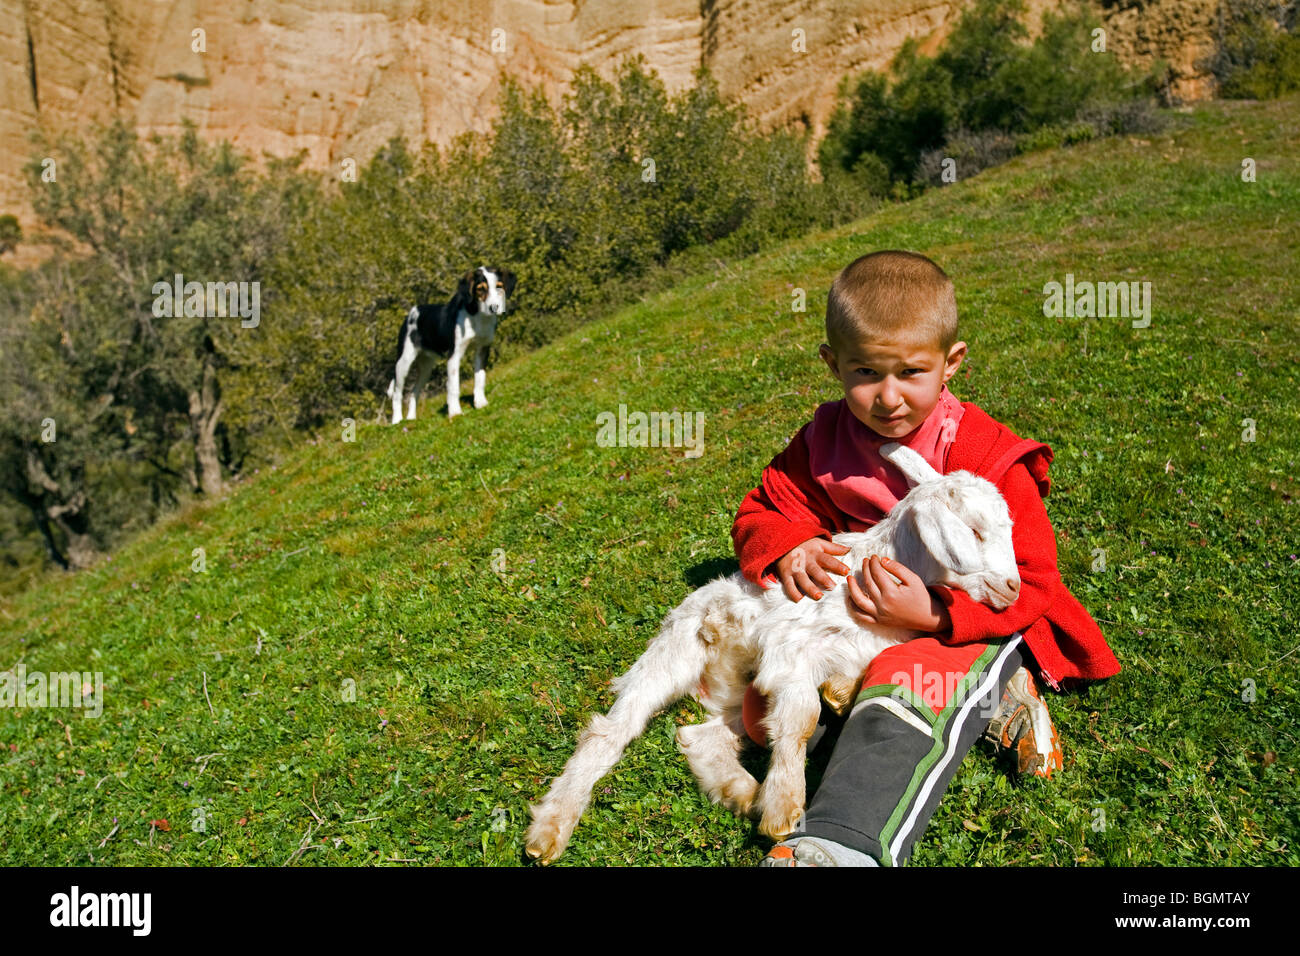 A boy with a goat pup, Sardes Izmir Turkey Stock Photo